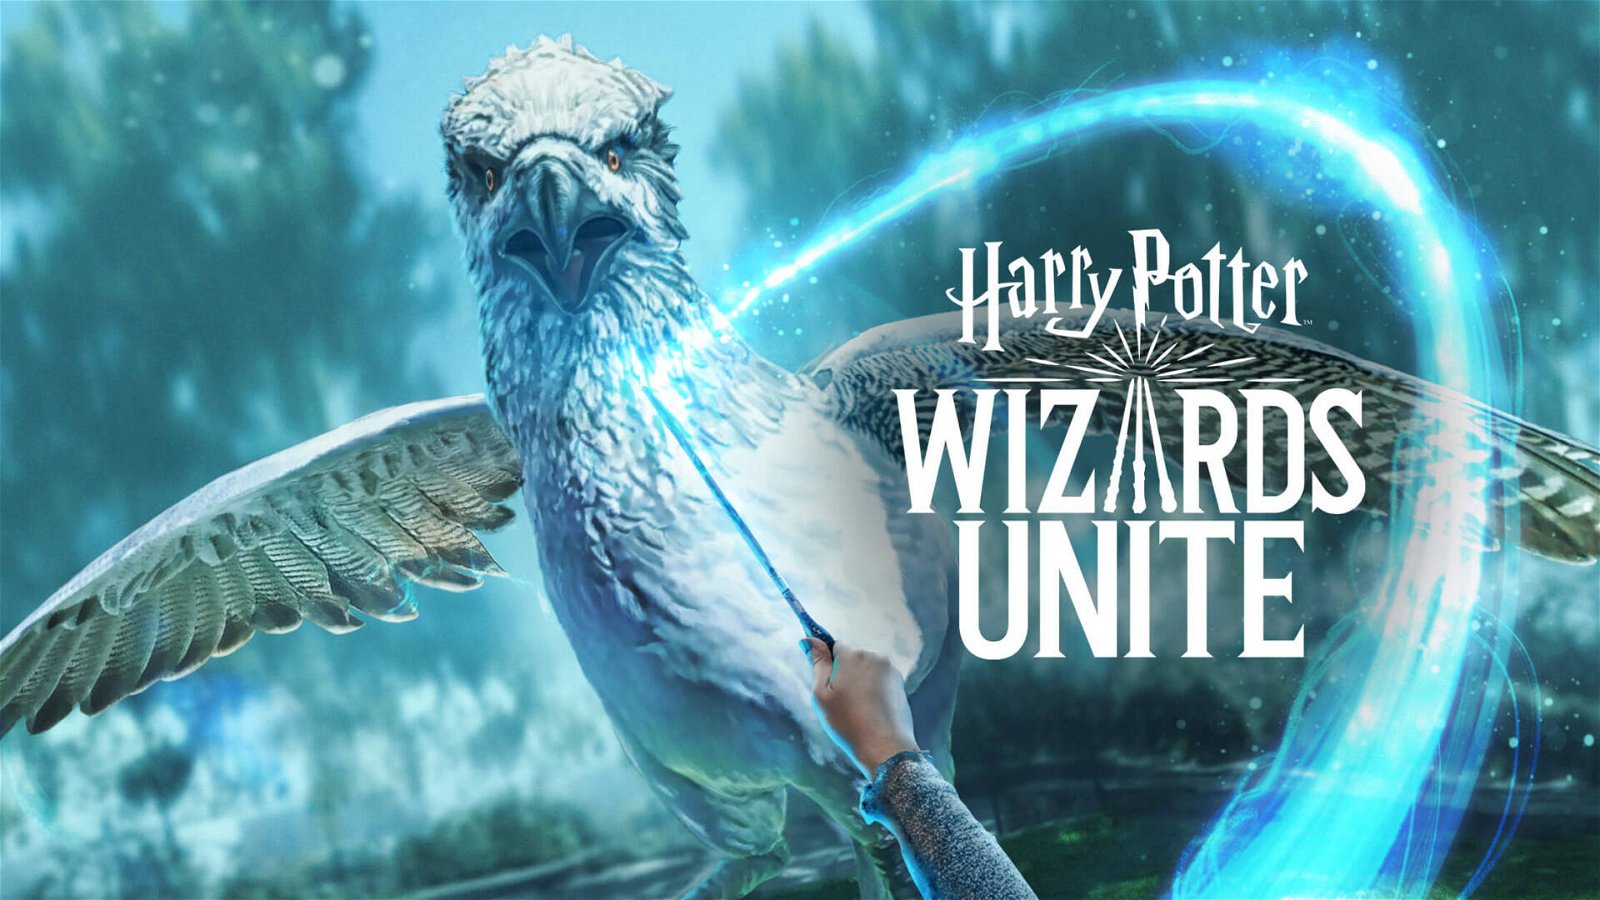 Immagine di Harry Potter Wizards Unite, come ottenere Energia Magica velocemente